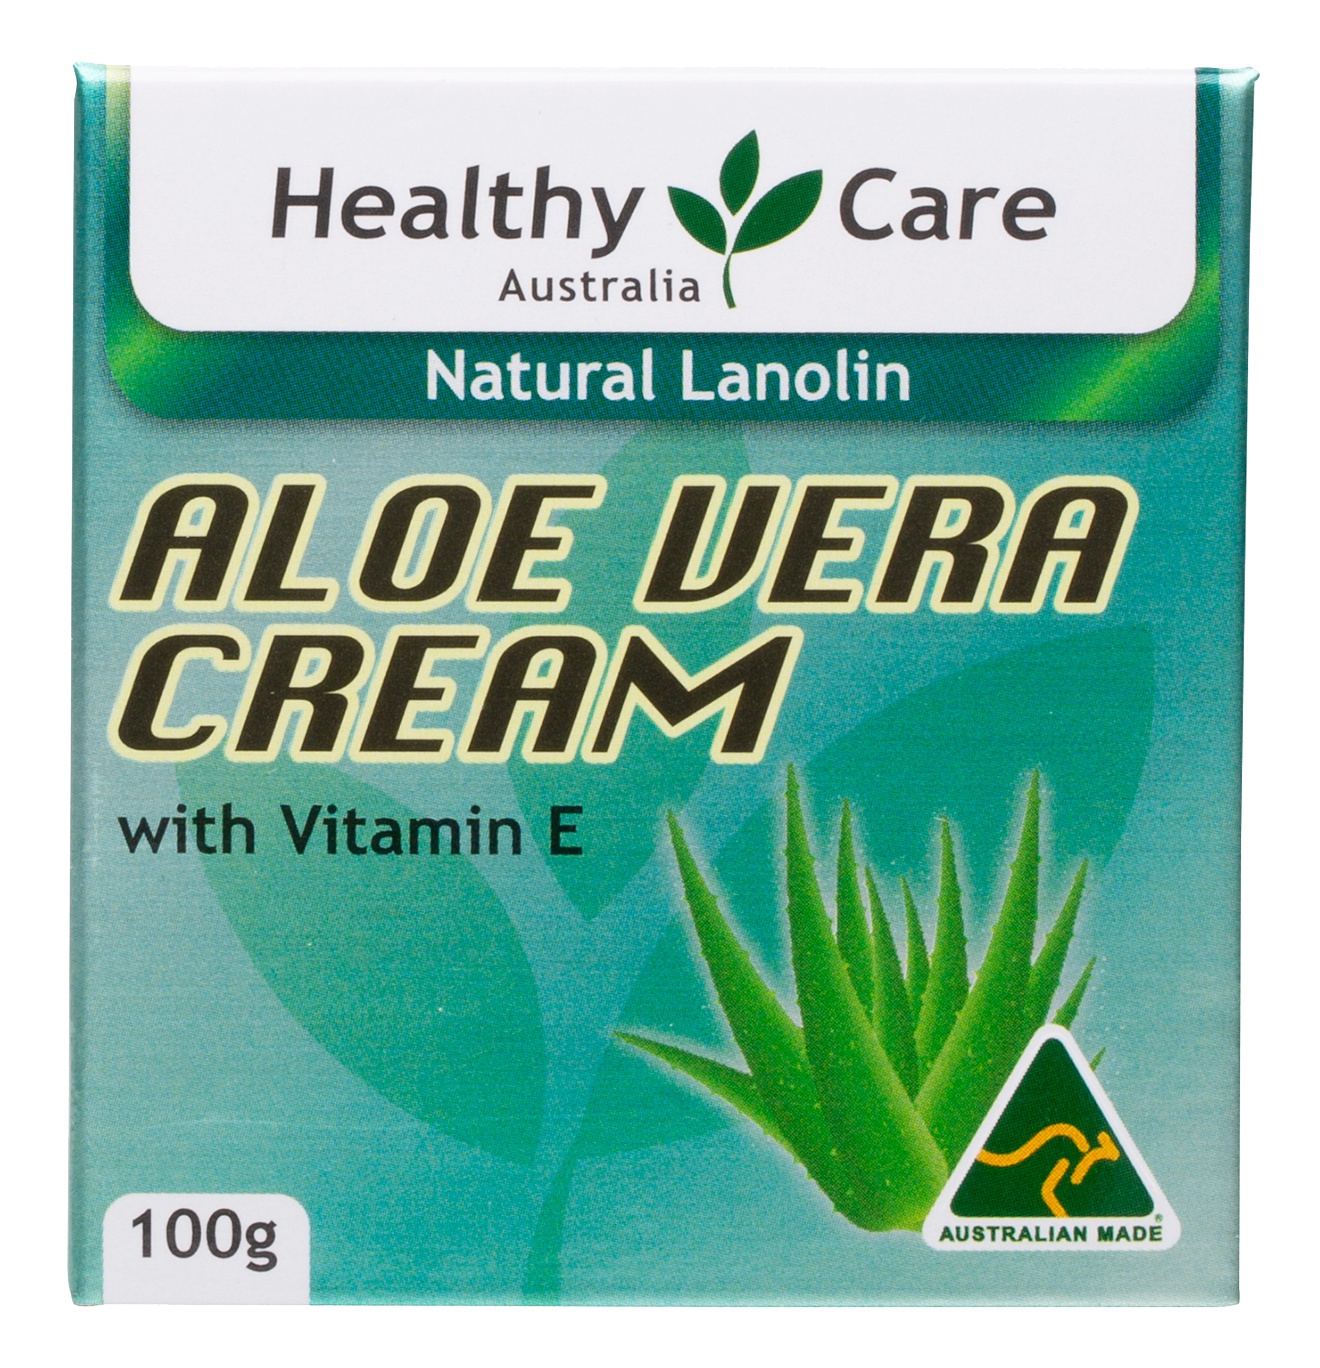 Healthy Care Aloe Vera Cream